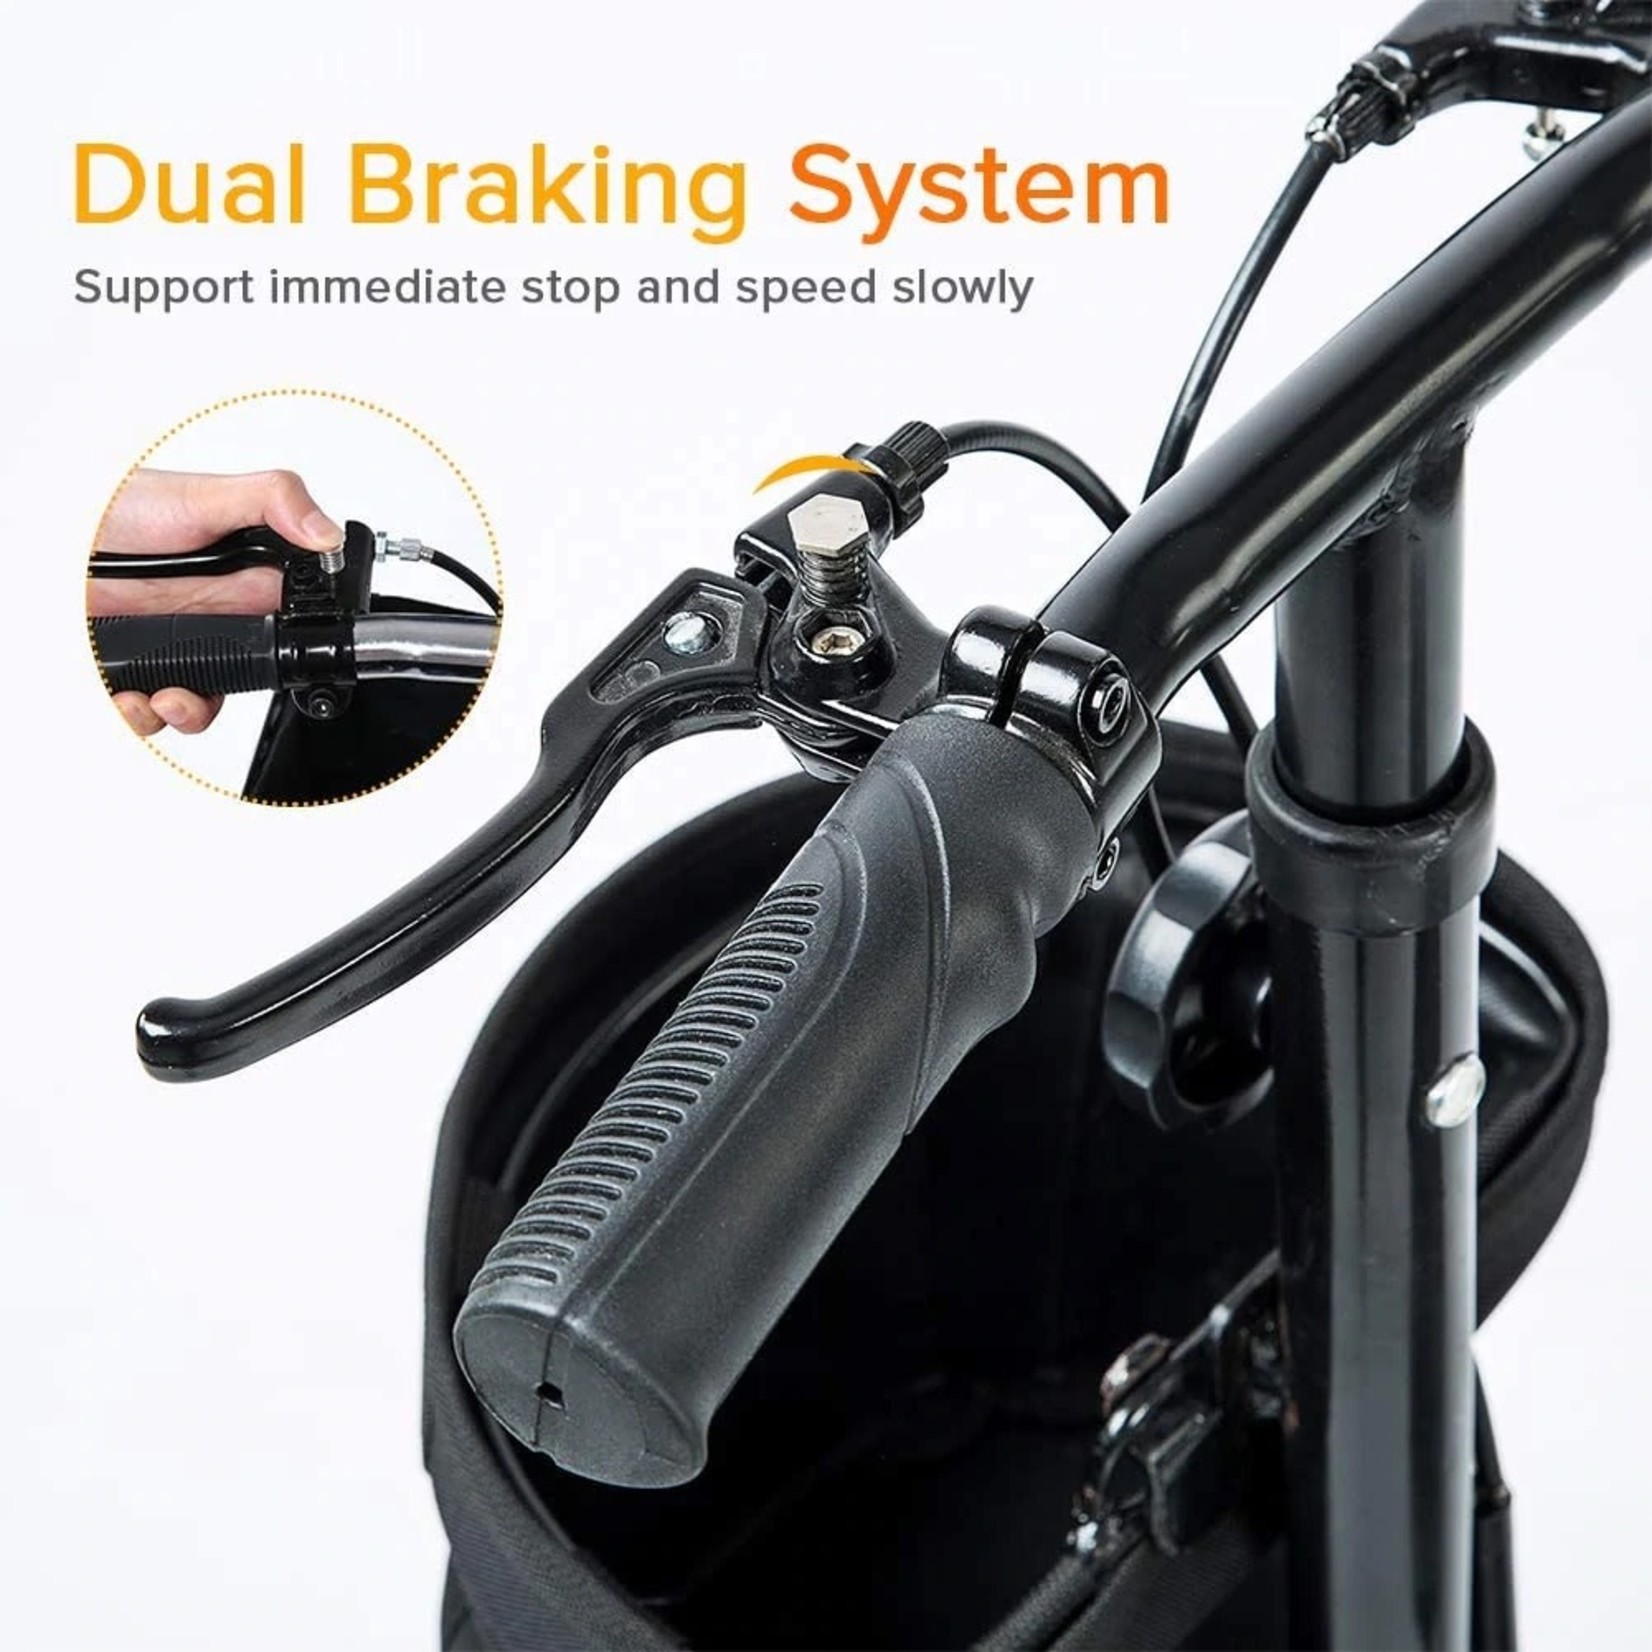 Elenker HW-8001 Knee Scooter Economy Dual Braking System